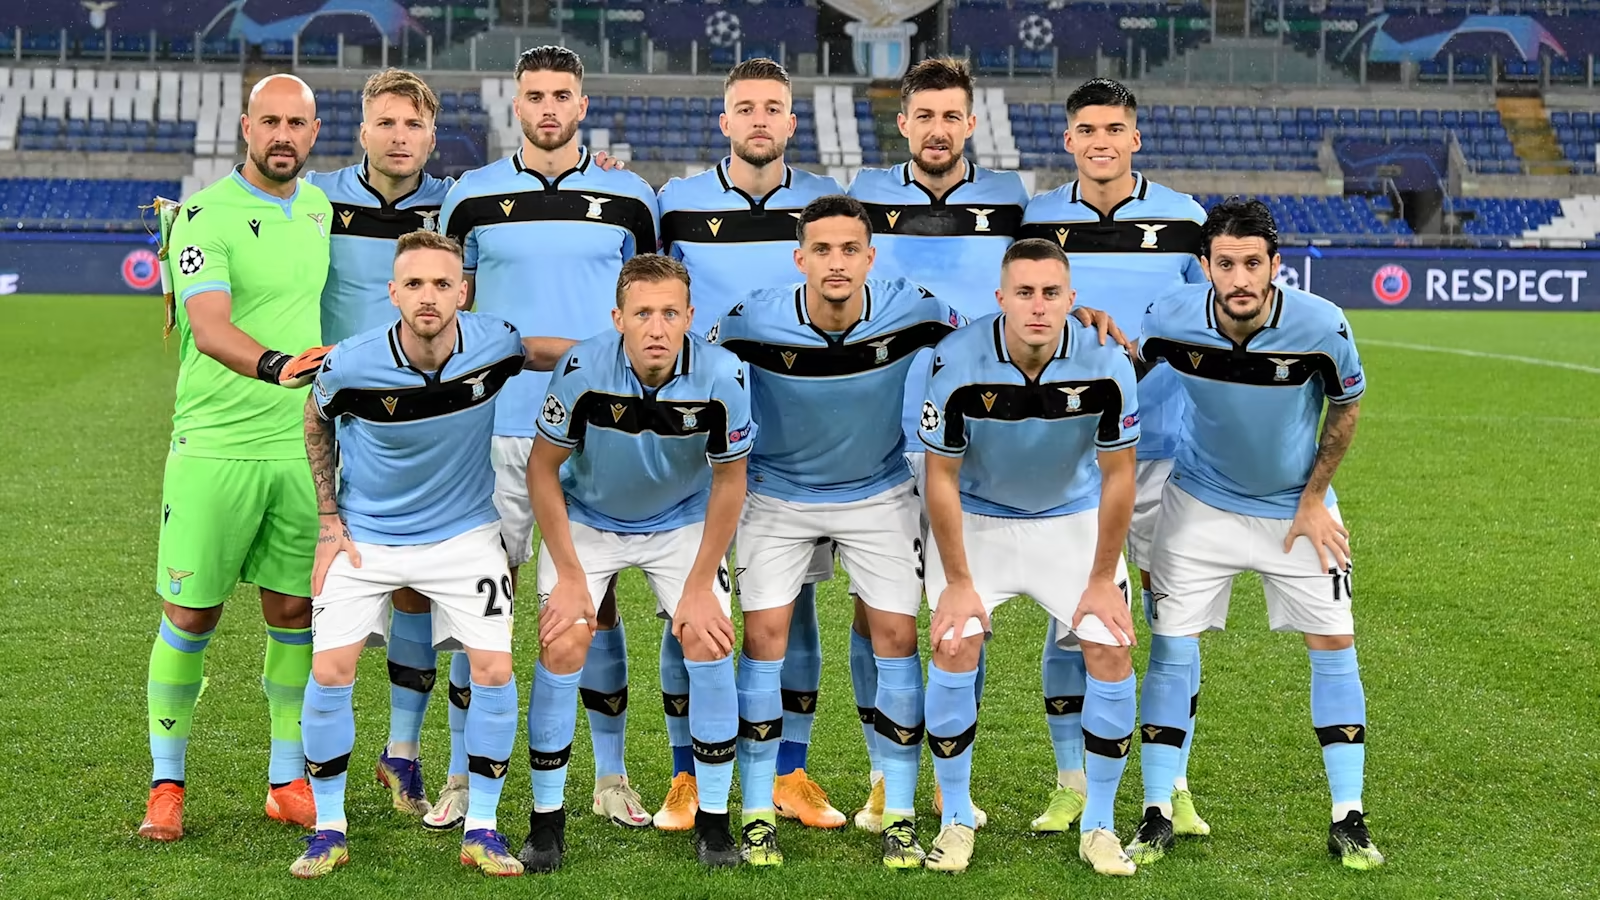 Giới thiệu câu lạc bộ Lazio - Top CLB mạnh nhất xứ Rome